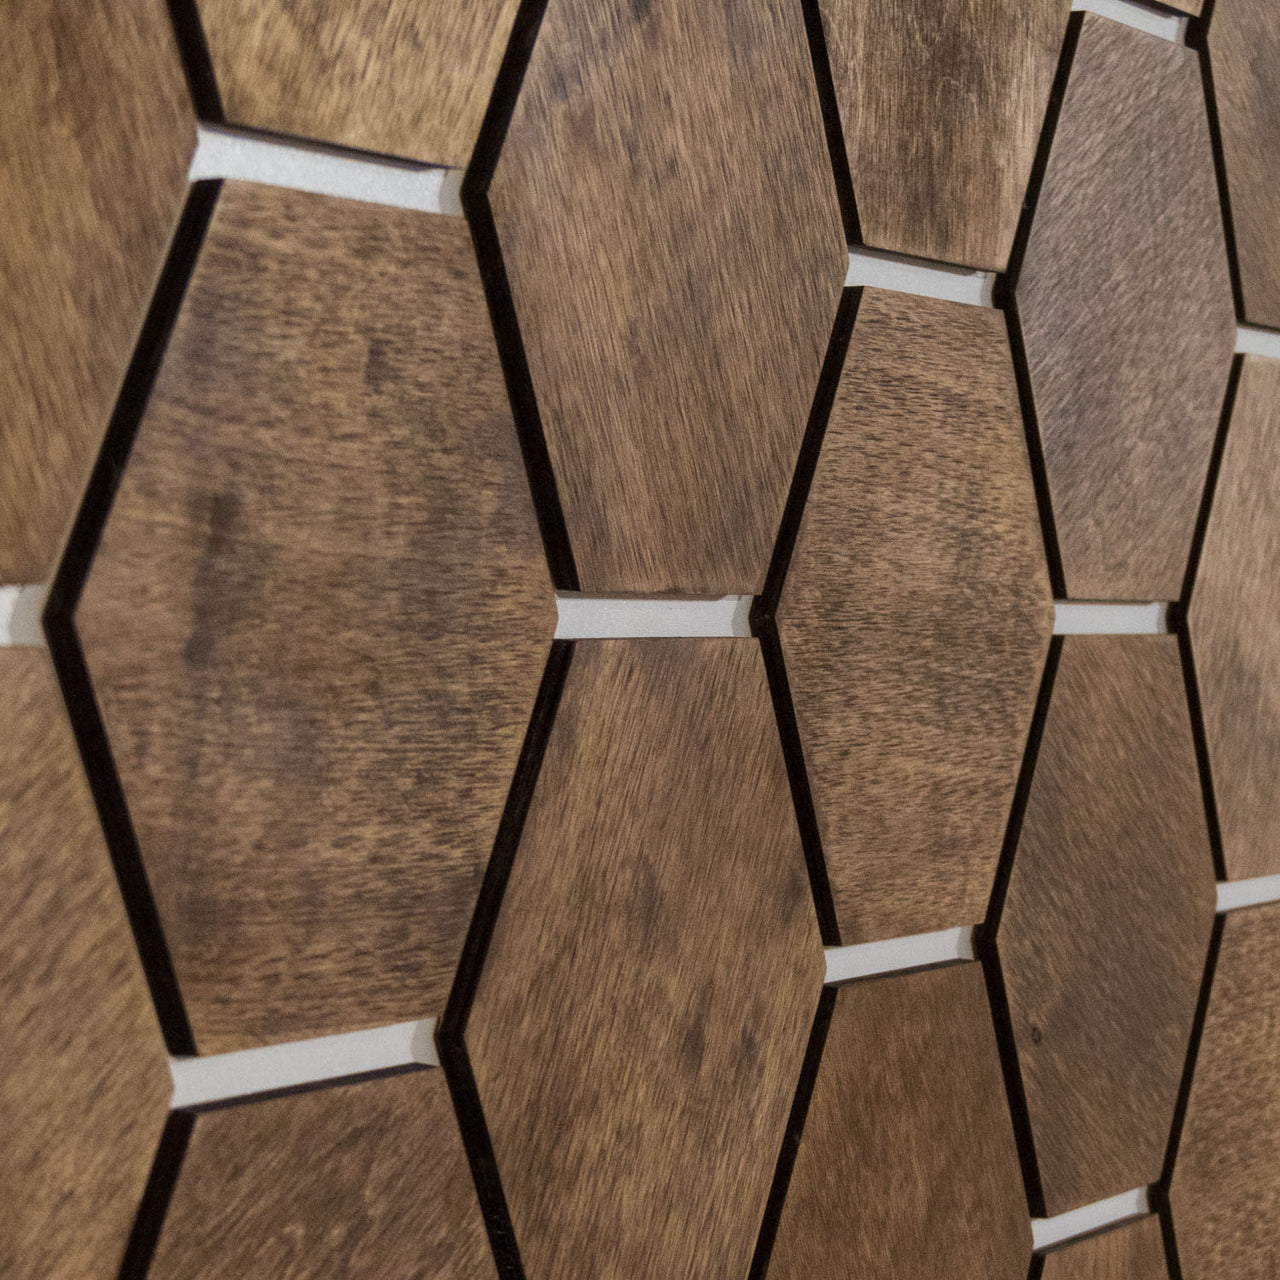 Hexagonal Wooden Wall Panels [32pcs] Birch Light